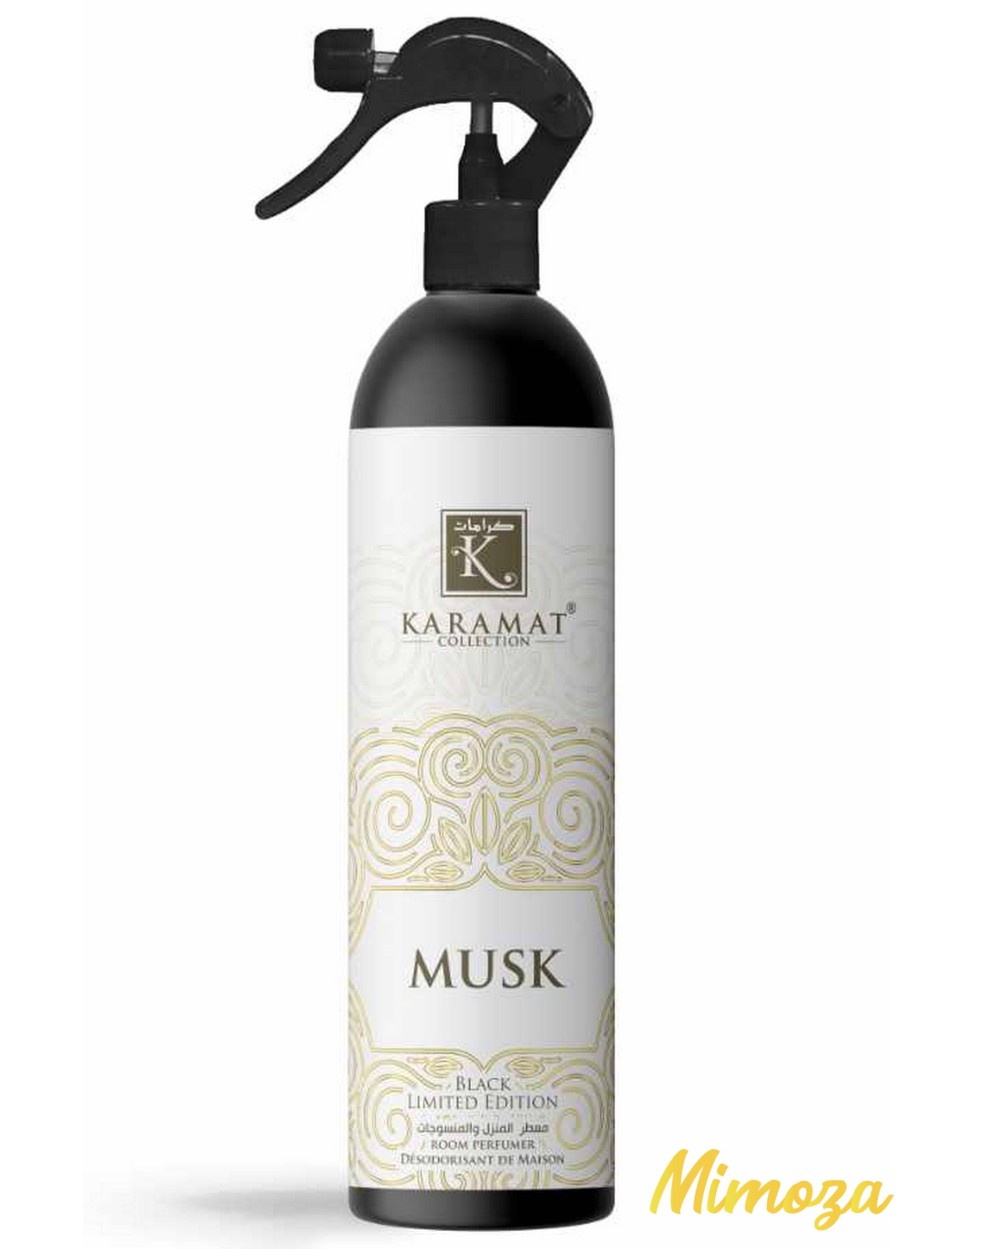 Air freshener Musk - Karamat - 500 ml